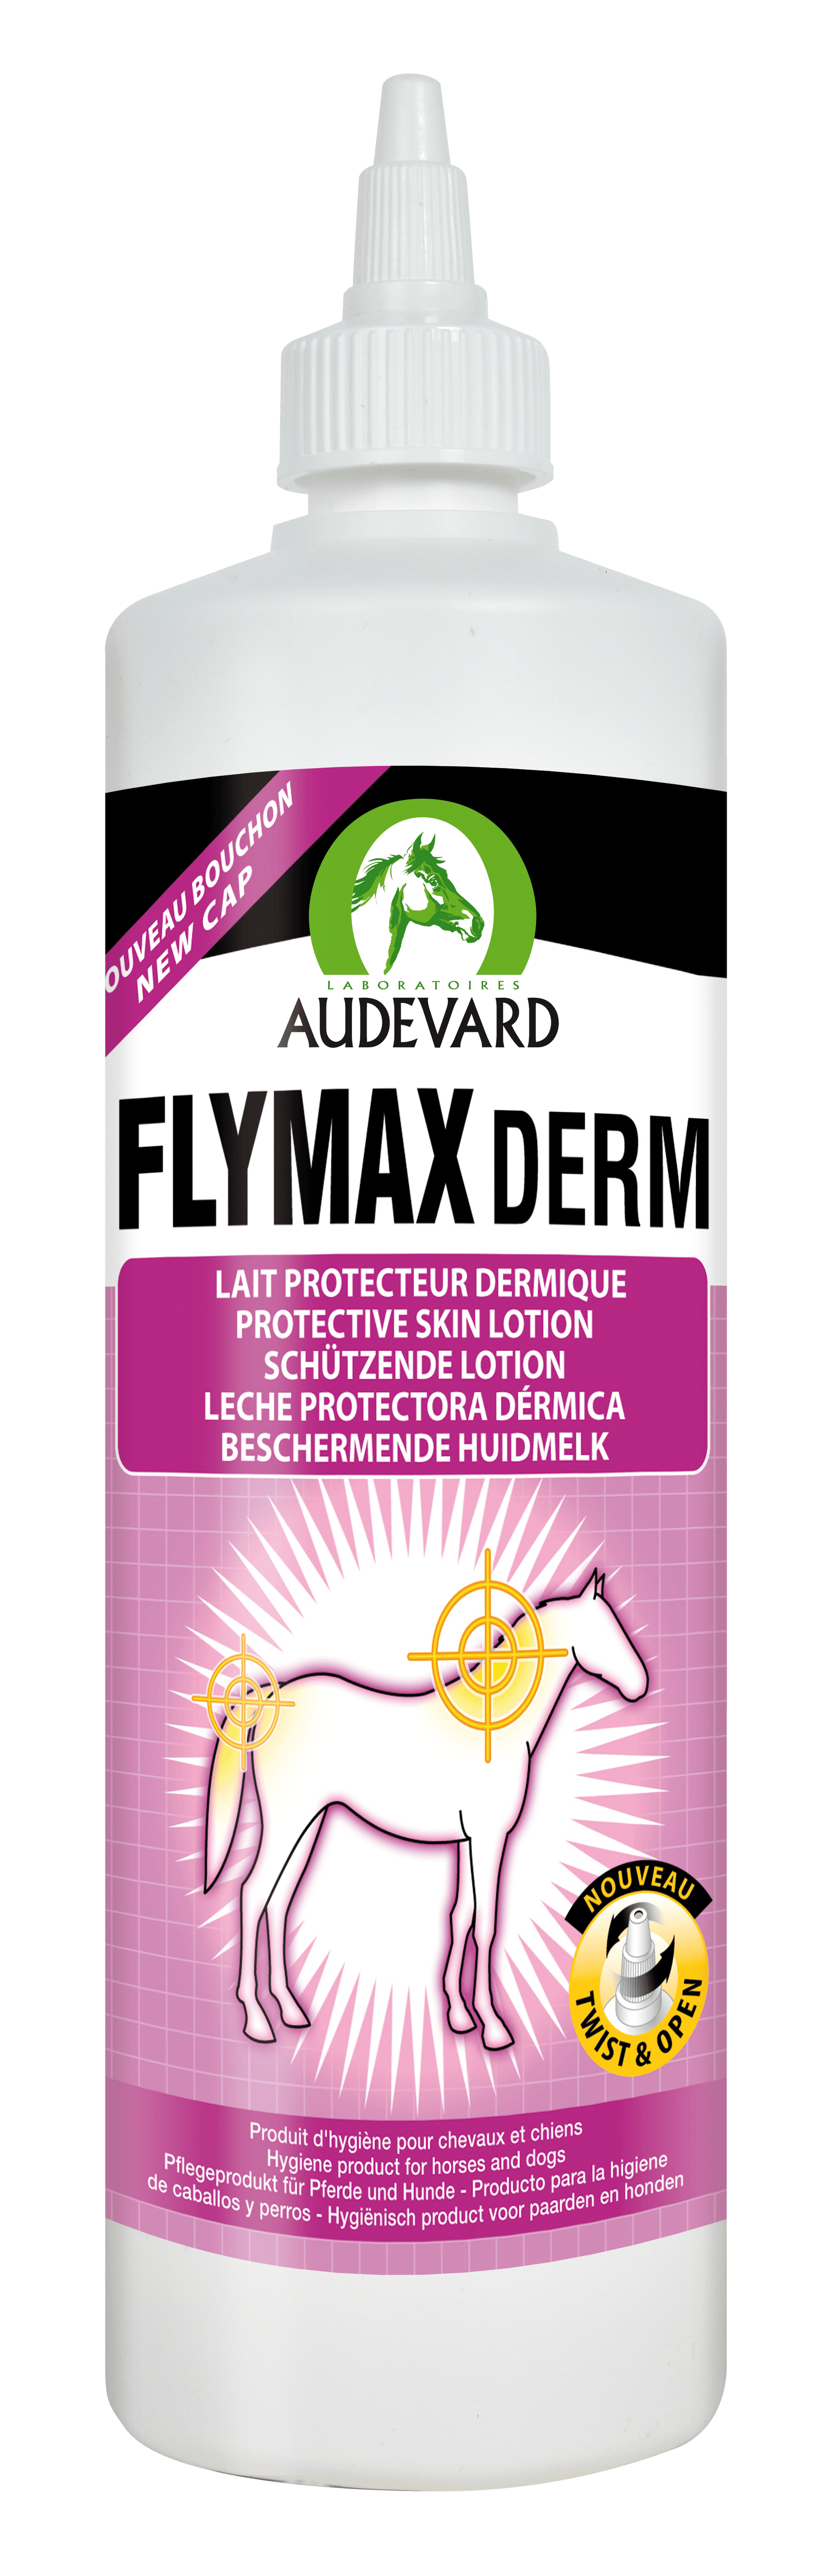 Flymax Derm - Audevard - Darreichungsform:Lösung, Pflegeprodukte:Hautpflege/Shampoo, Pflegeprodukte:Sommerekzem, Tierart:Pferd - Marigin AG Onlineshop für Tierbedarf